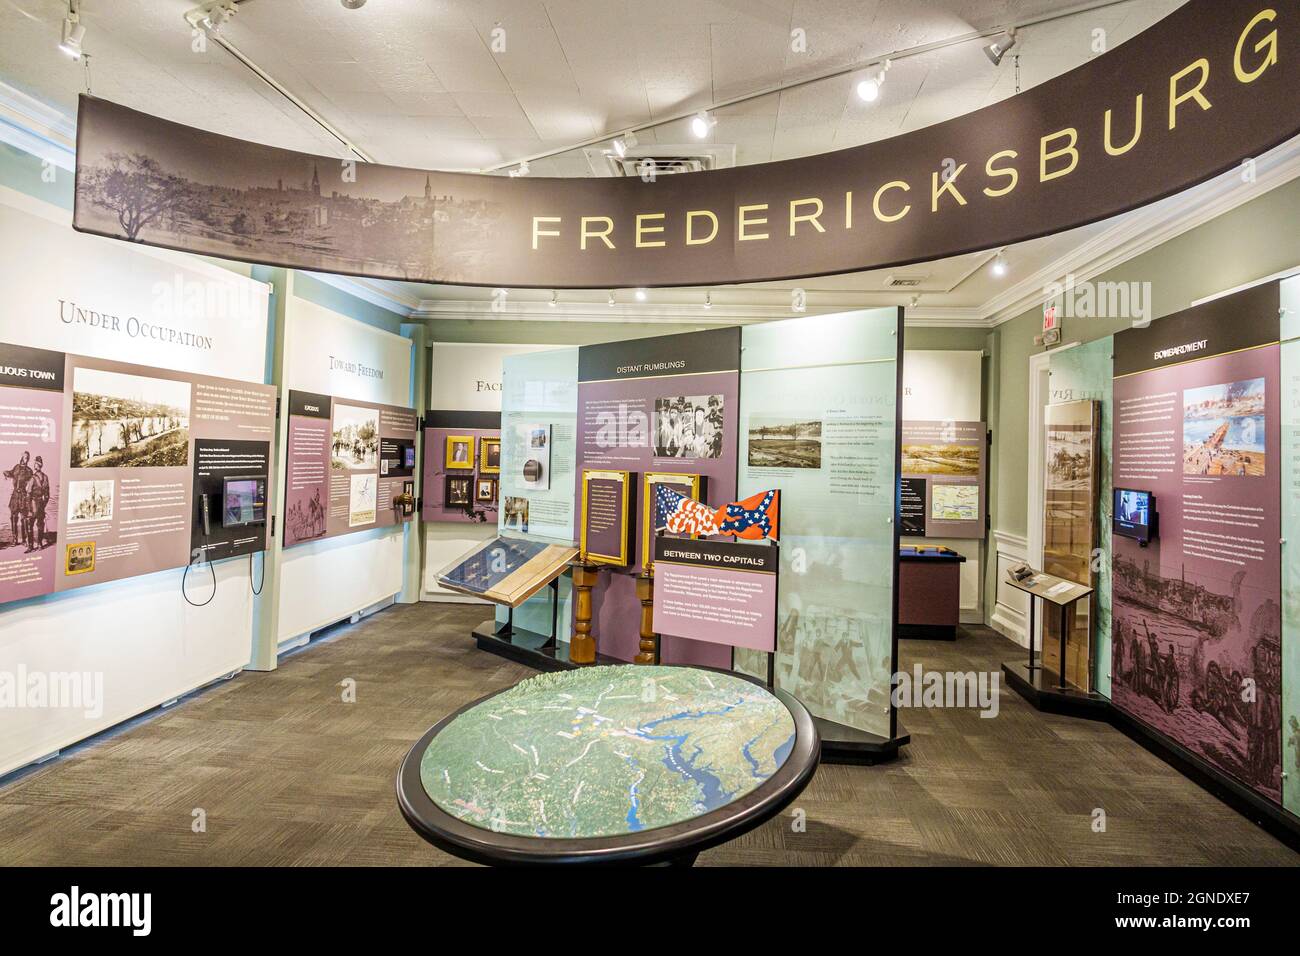 Fredericksburg Virginia, Fredericksburg Battlefield Visitor Center, Ausstellung zur Geschichte des Bürgerkriegs, Sammlung im Inneren des Museums Stockfoto